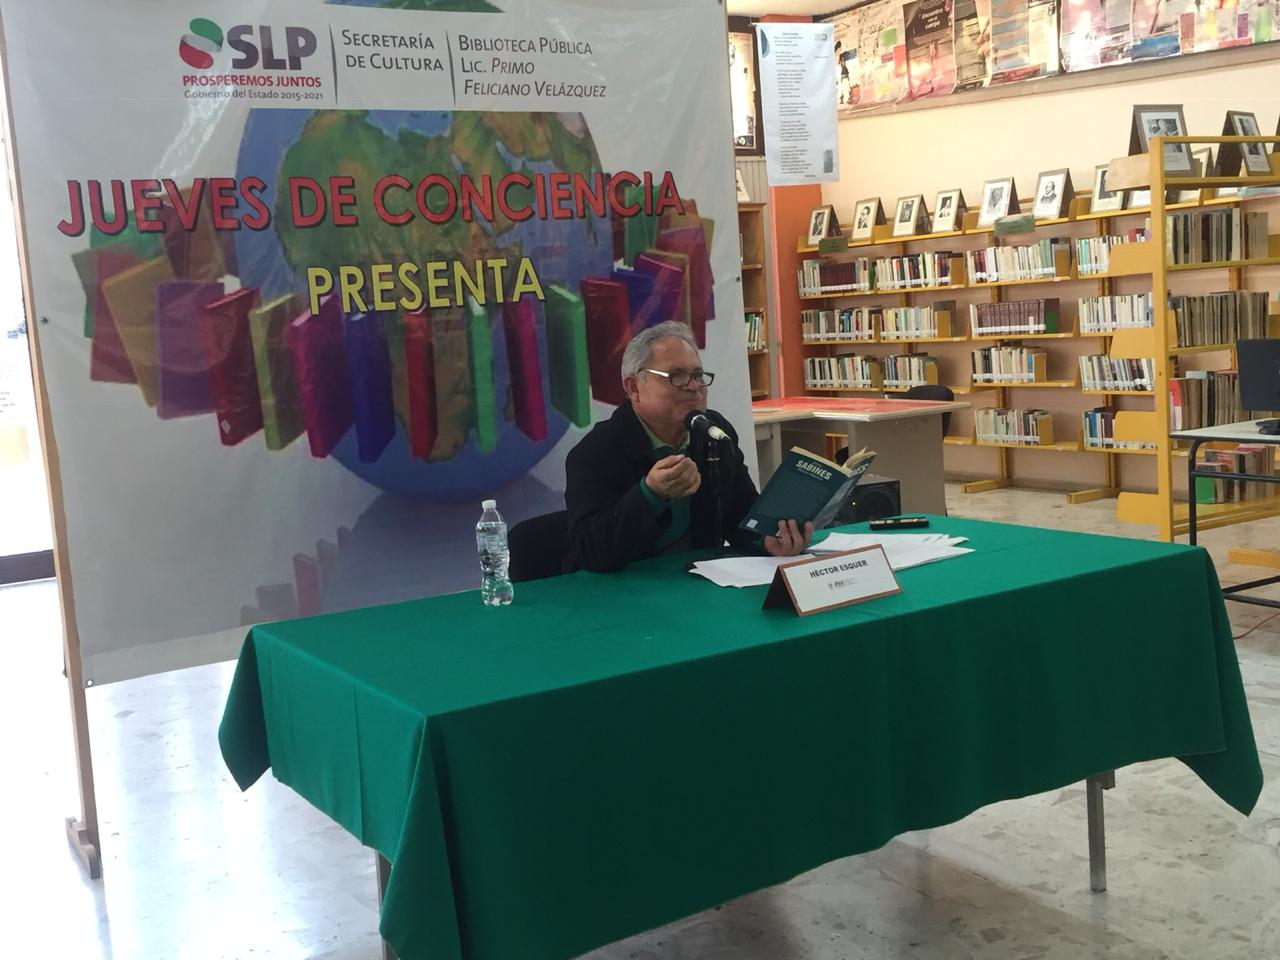 Qué hacer este jueves en San Luis Potosí #CulturaViva